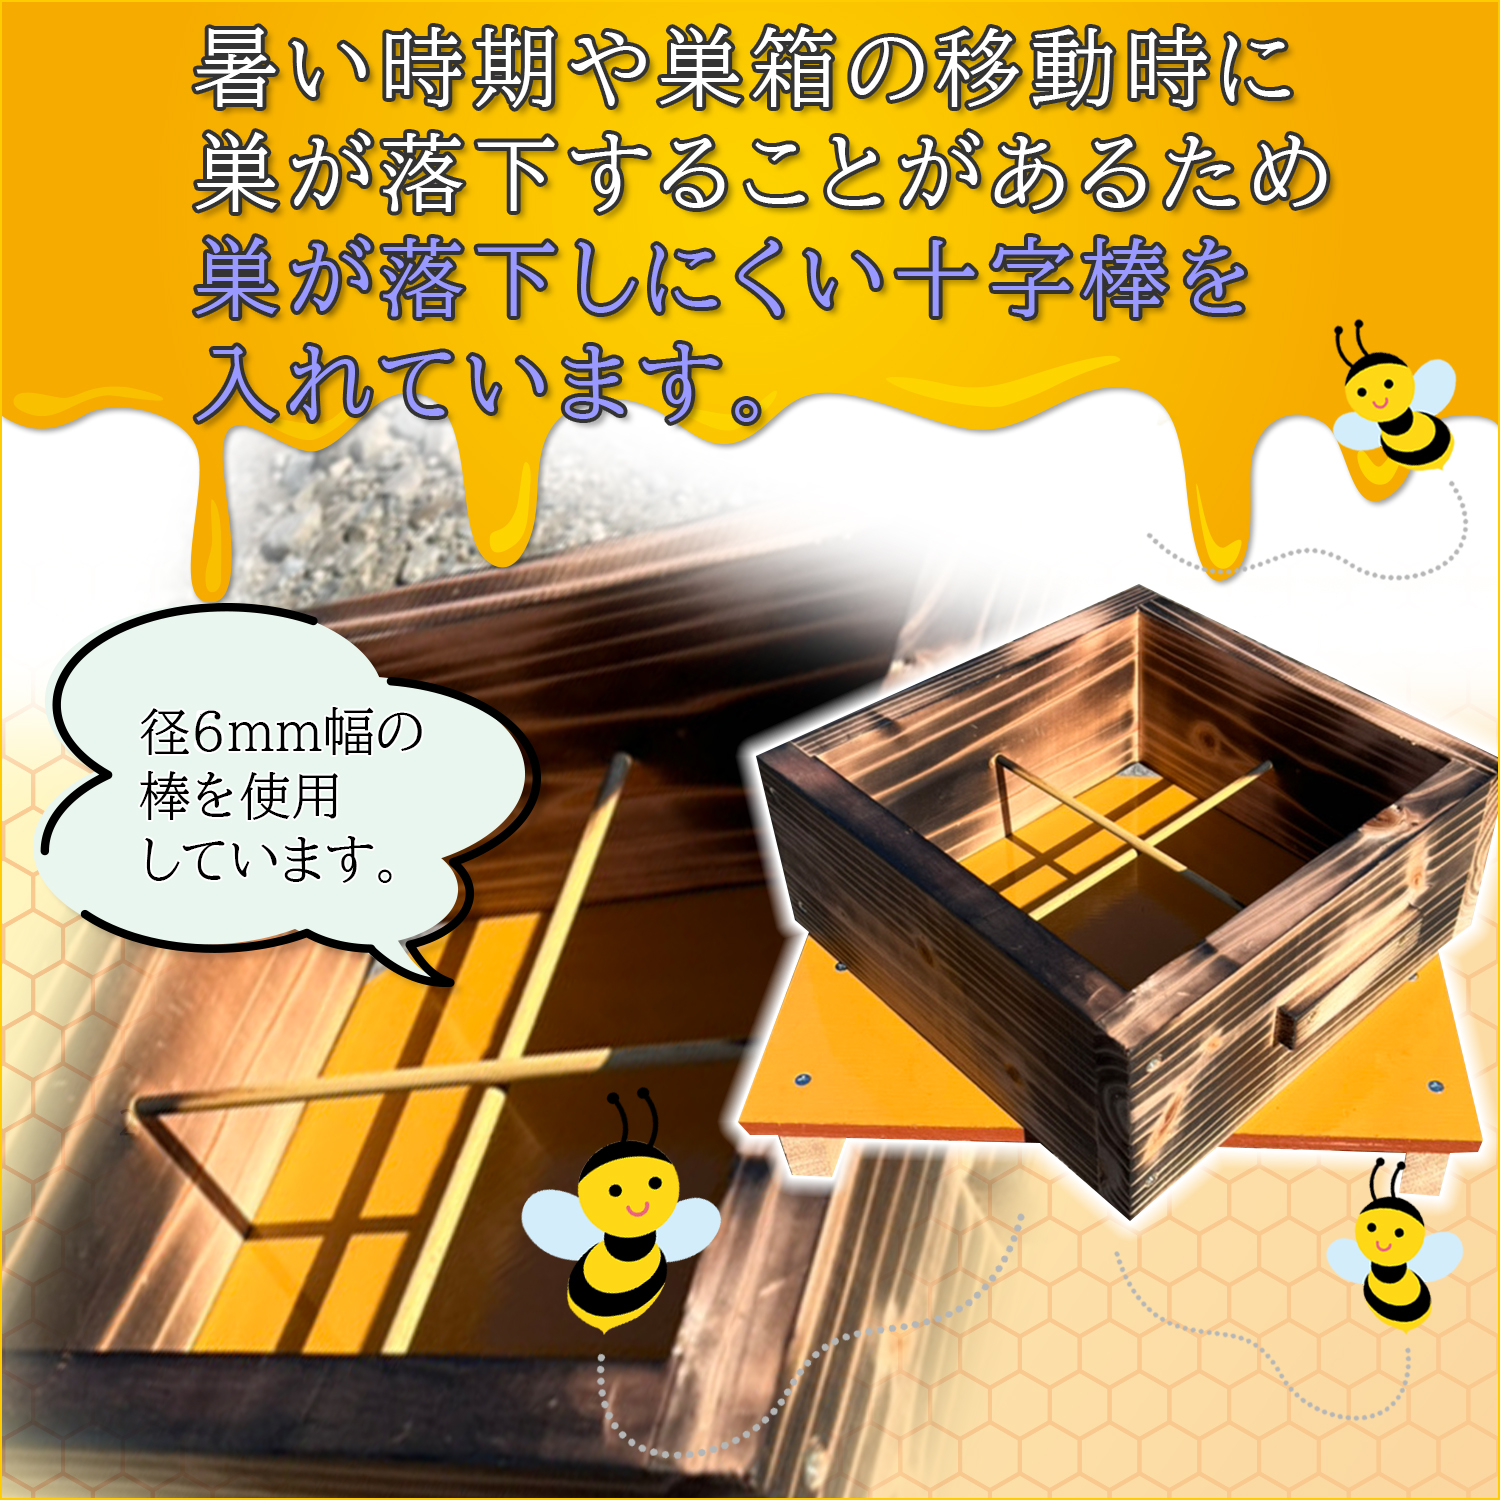 日本蜜蜂 巣箱 継箱(たし箱) 2箱 二ホンミツバチ 日本みつばち 重箱式巣箱 送料無料 焼き有 | いいネット通販